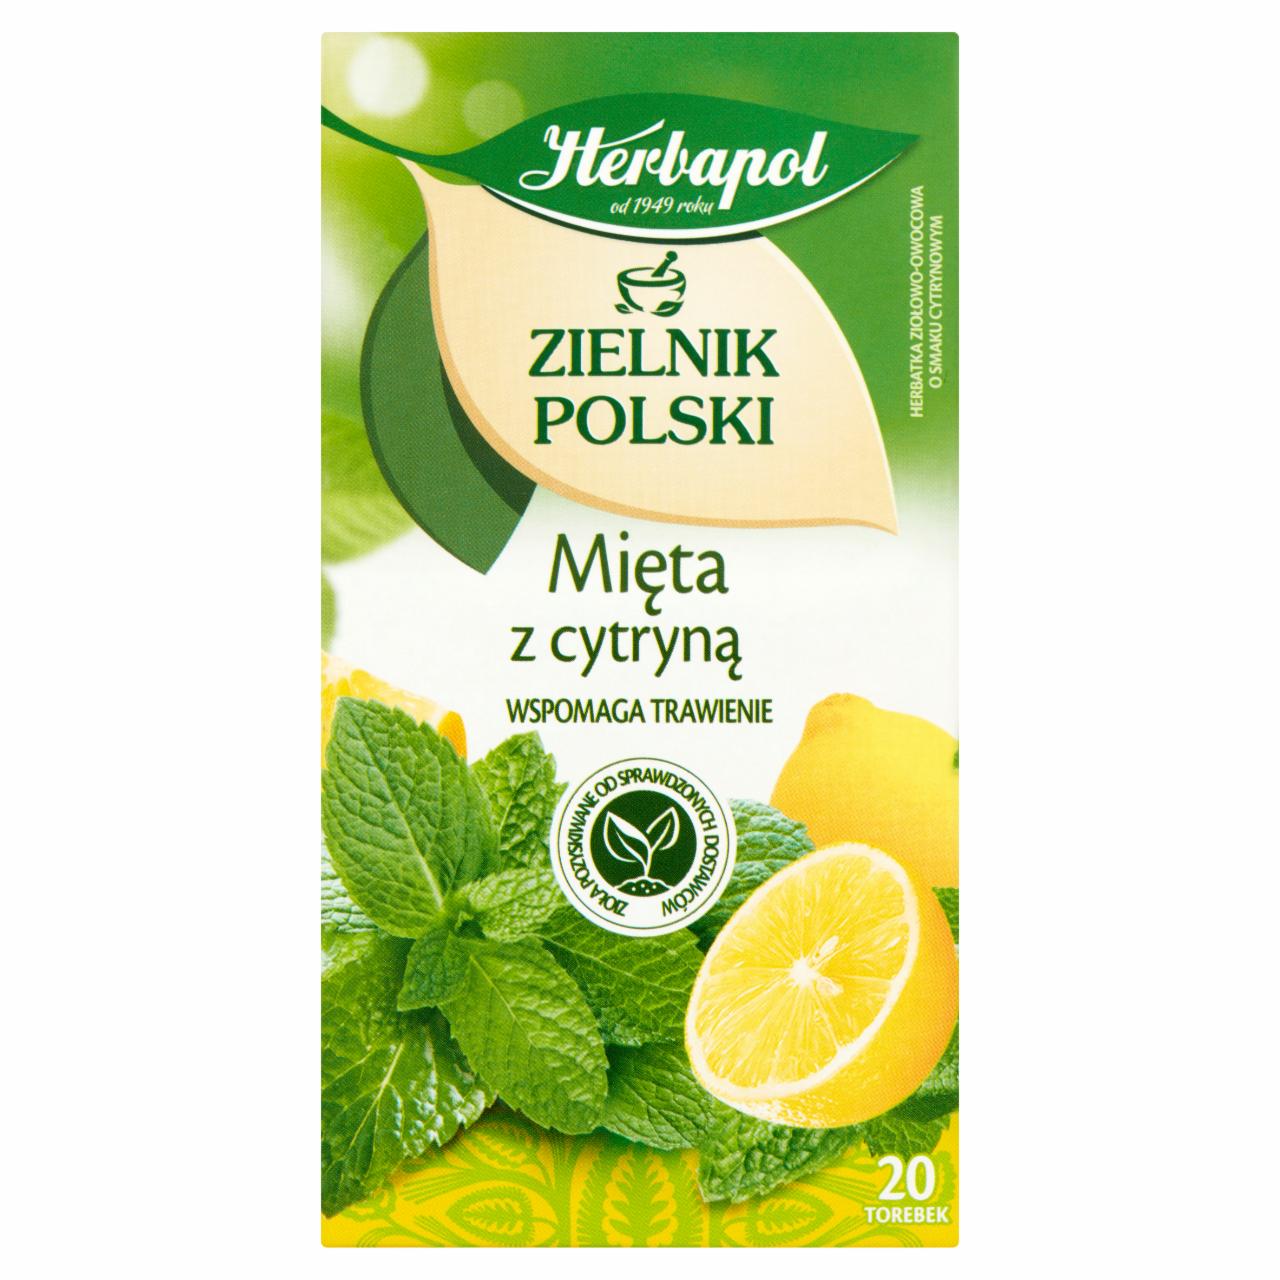 Zdjęcia - Herbapol Zielnik Polski Herbatka ziołowo-owocowa mięta z cytryną 30 g (20 x 1,5 g)